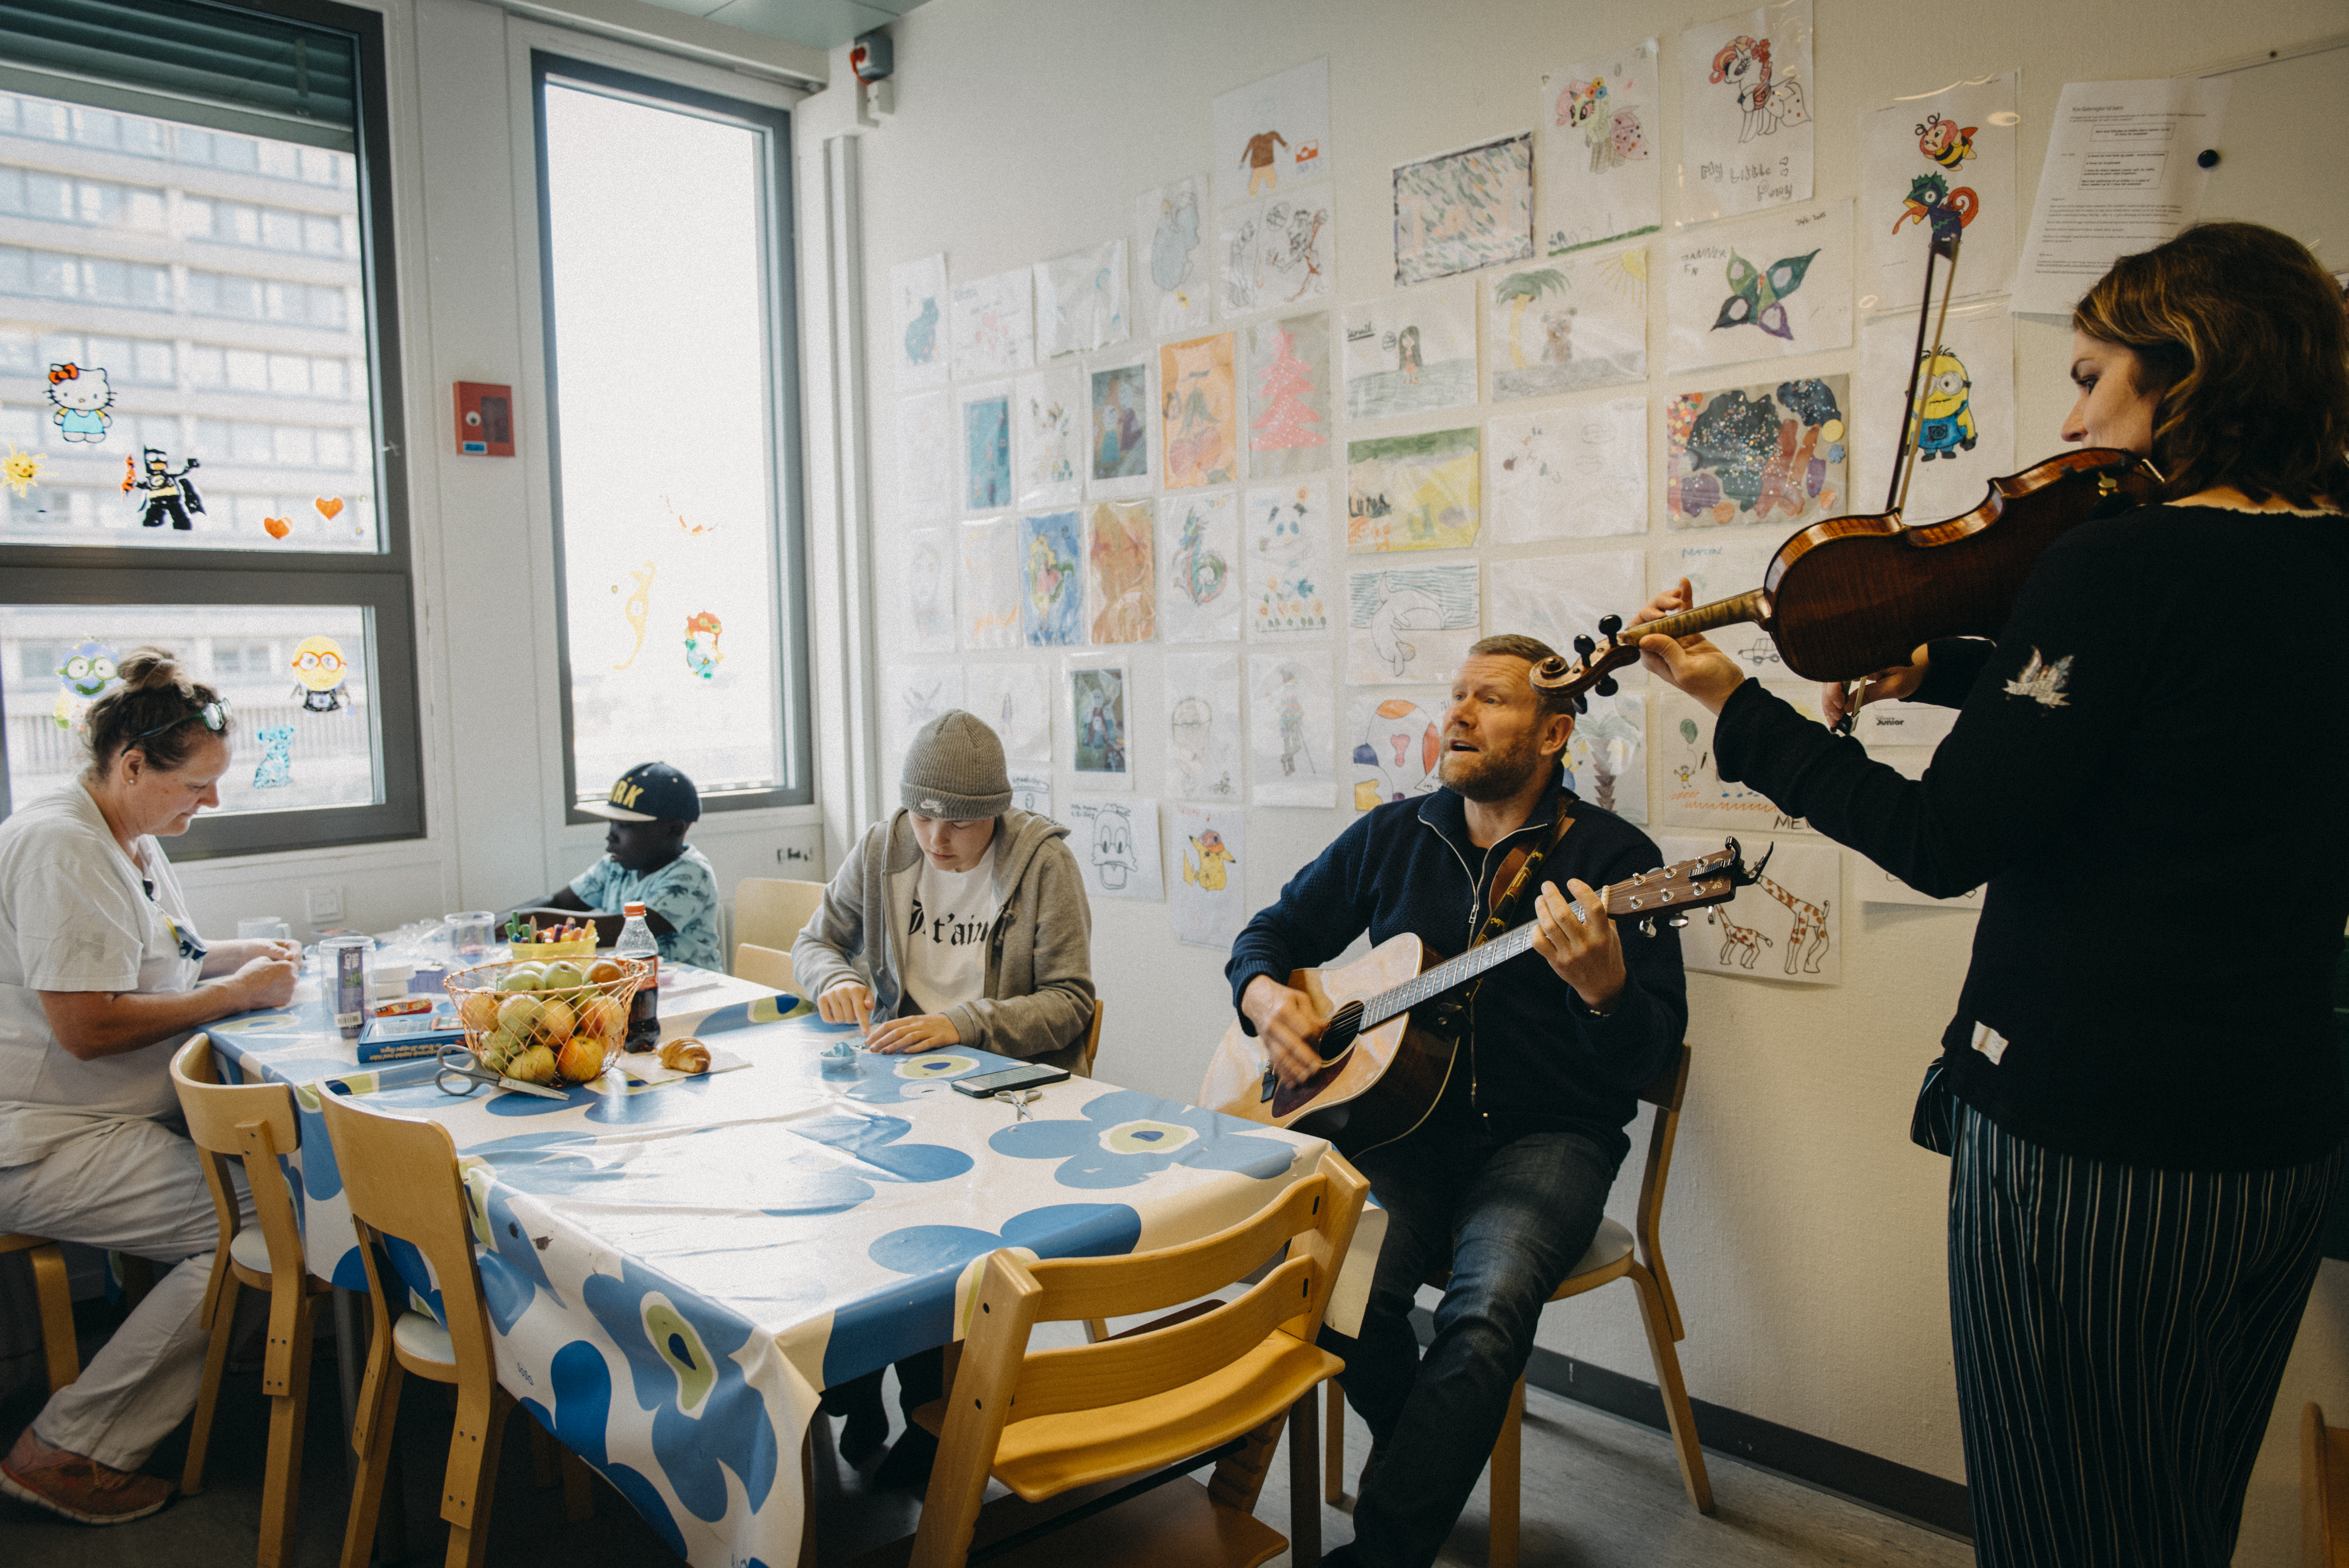 Indimellem får violin og harpe selskab af en guitar. Foto: Pamela Morales